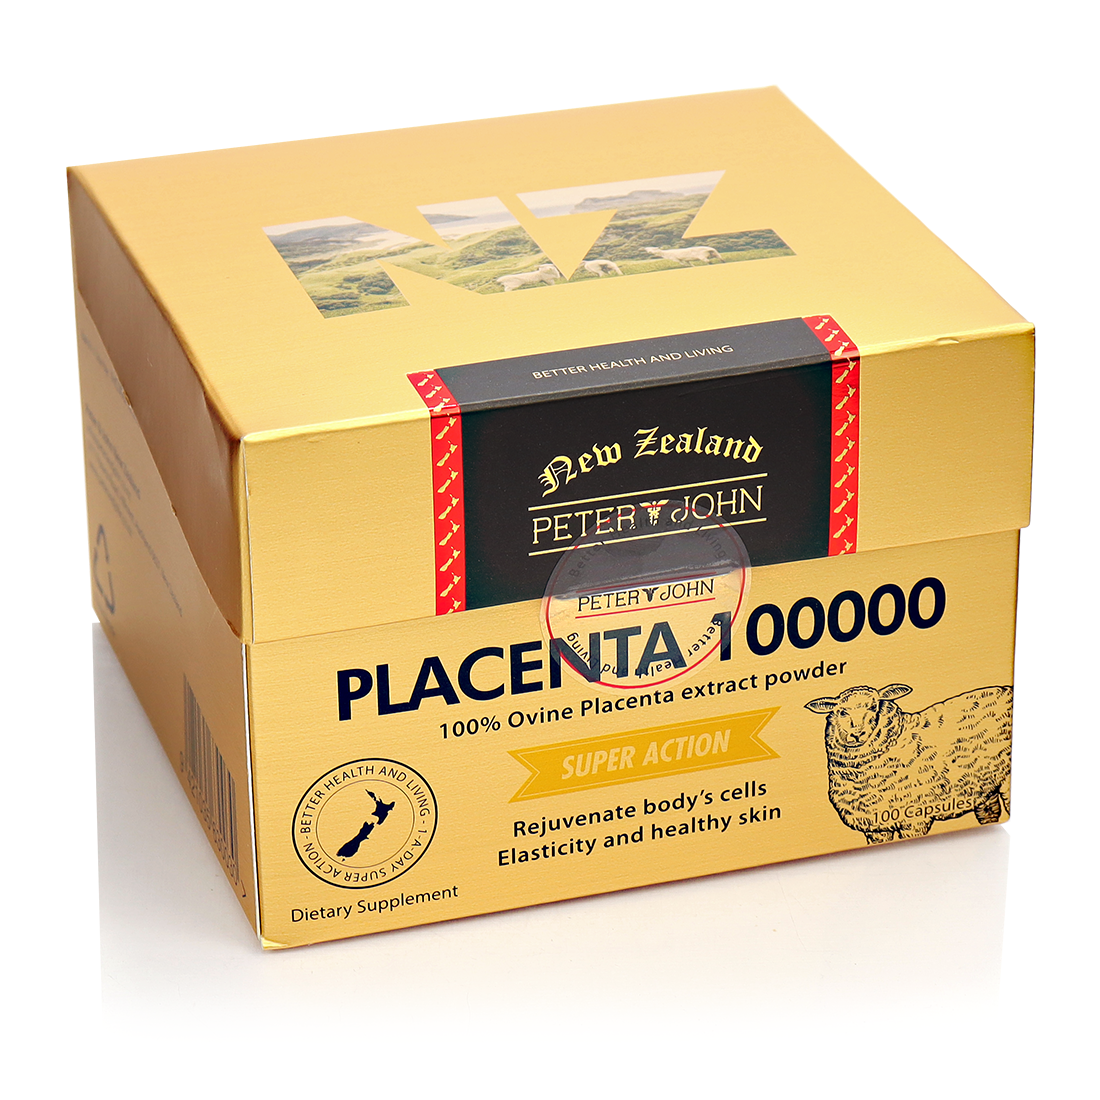 양태반 분말 플라센타 뉴질랜드 양태반캡슐 피터앤존 100000 60정